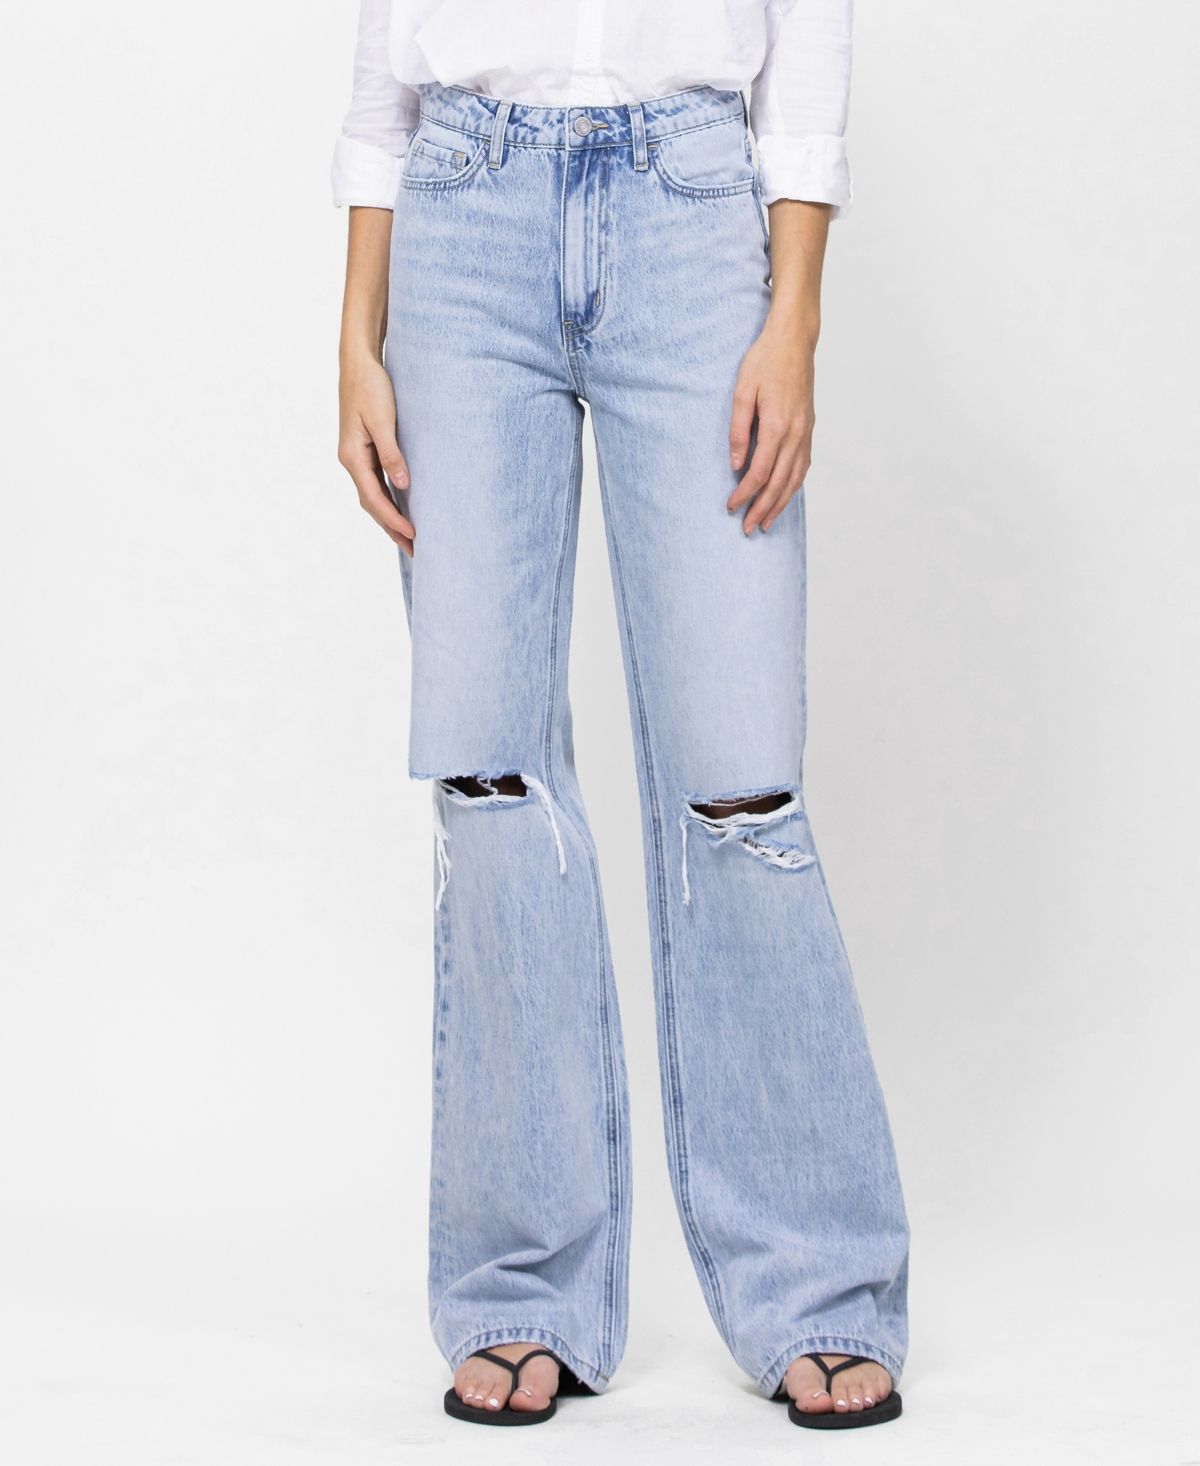 Women's 90's Vintage-Like Flare Jeans | Macys (US)